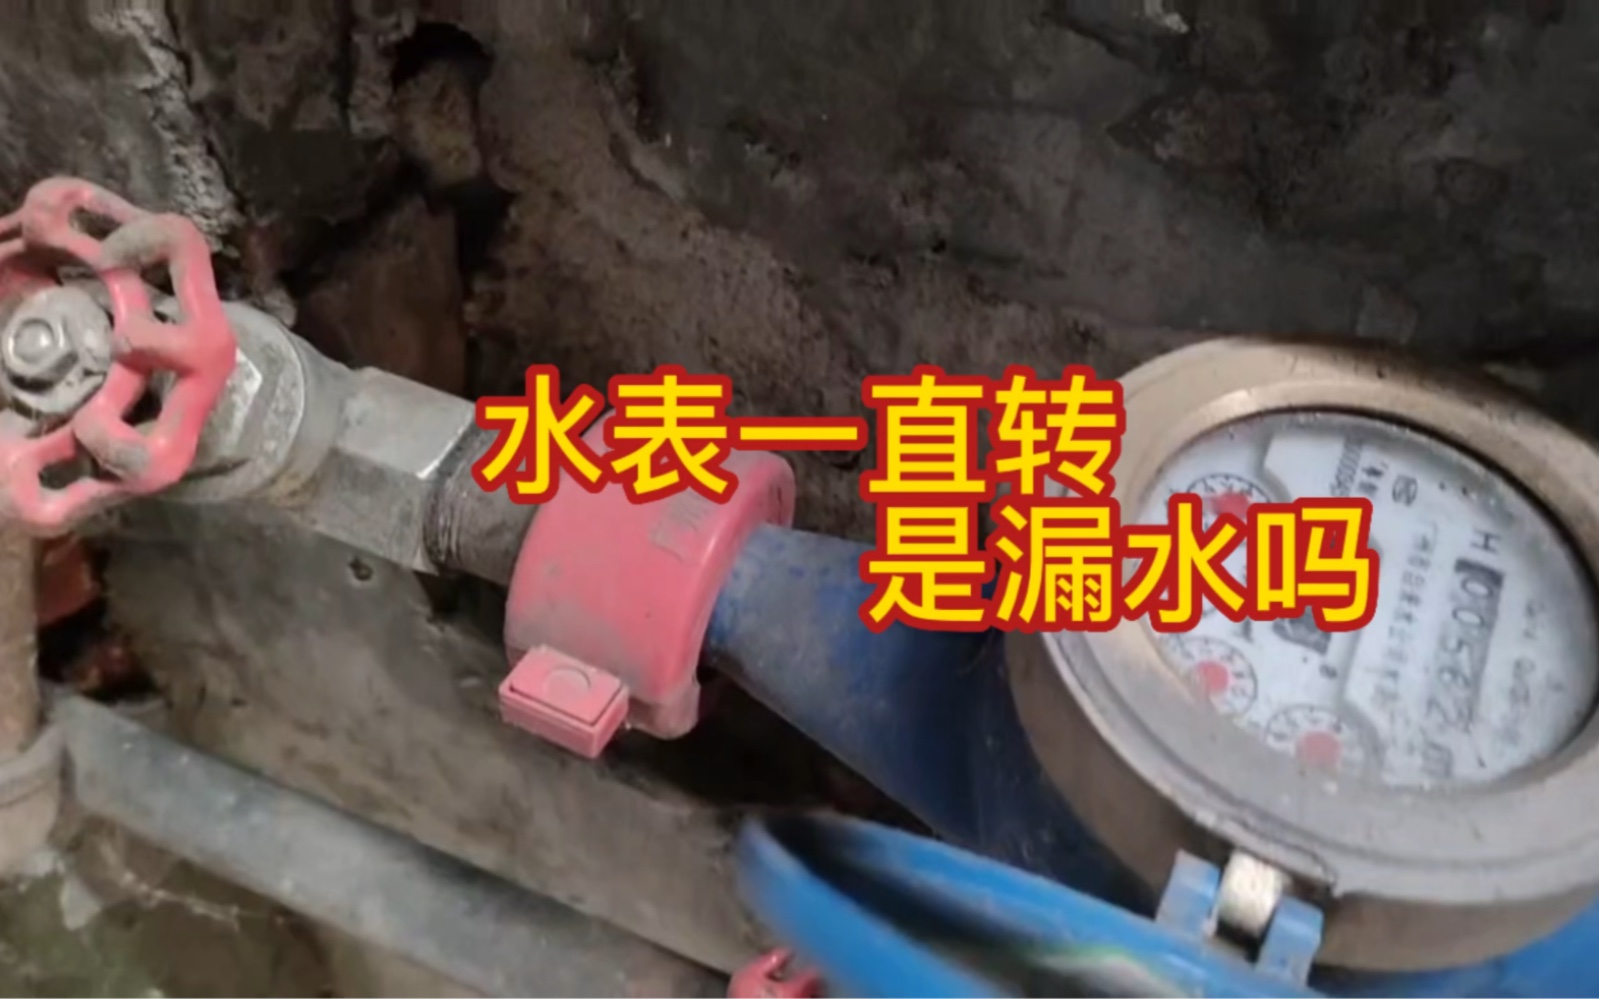 家里水表一直转，是家里漏水吗?#漏水检测 /漏水维修 /广州漏水检测/精准定位